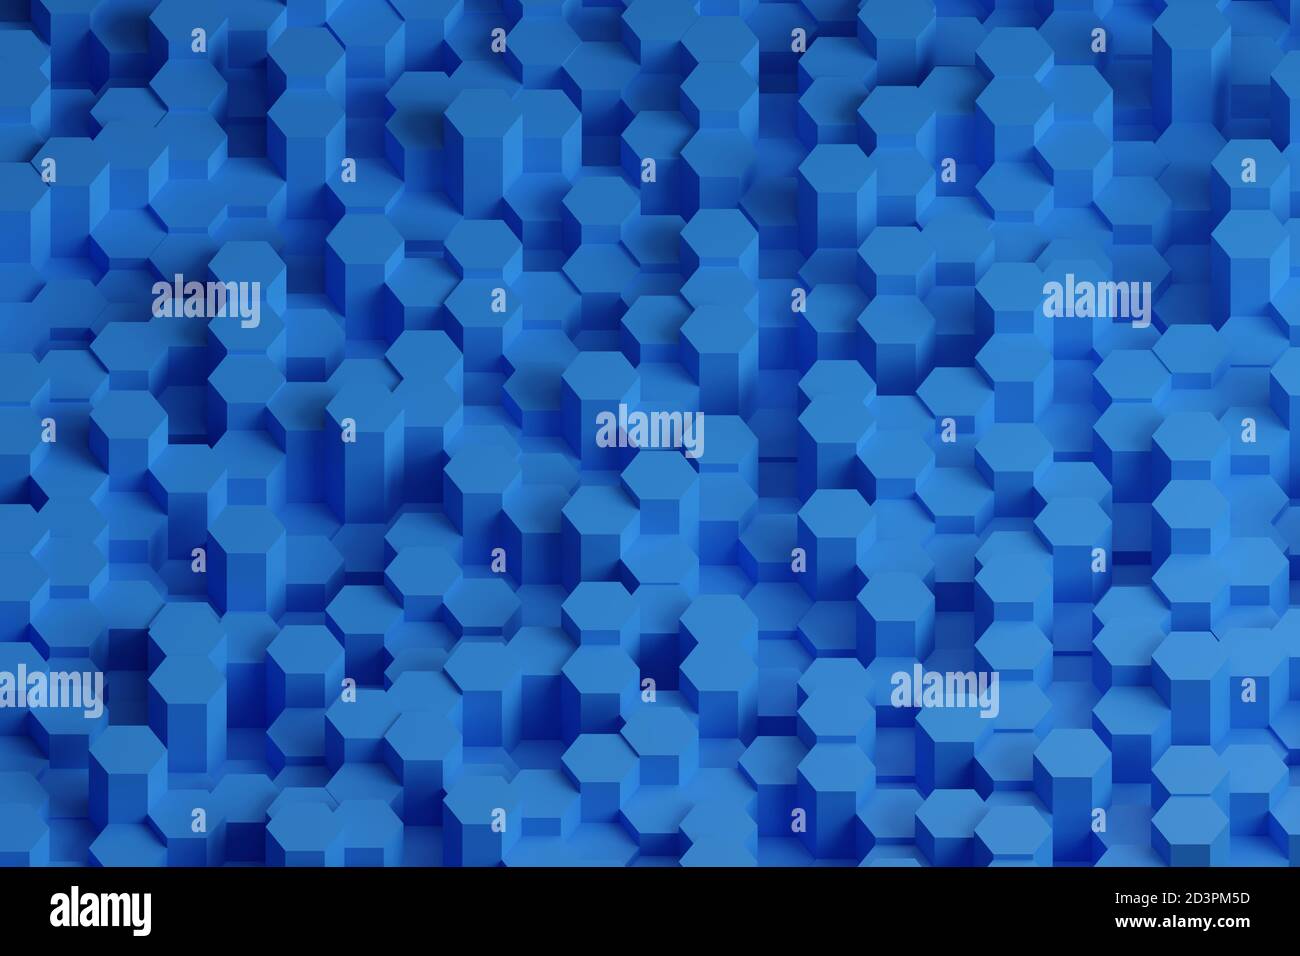 Patrón de hexágonos azules. Diseño abstracto. ilustración 3d. Foto de stock